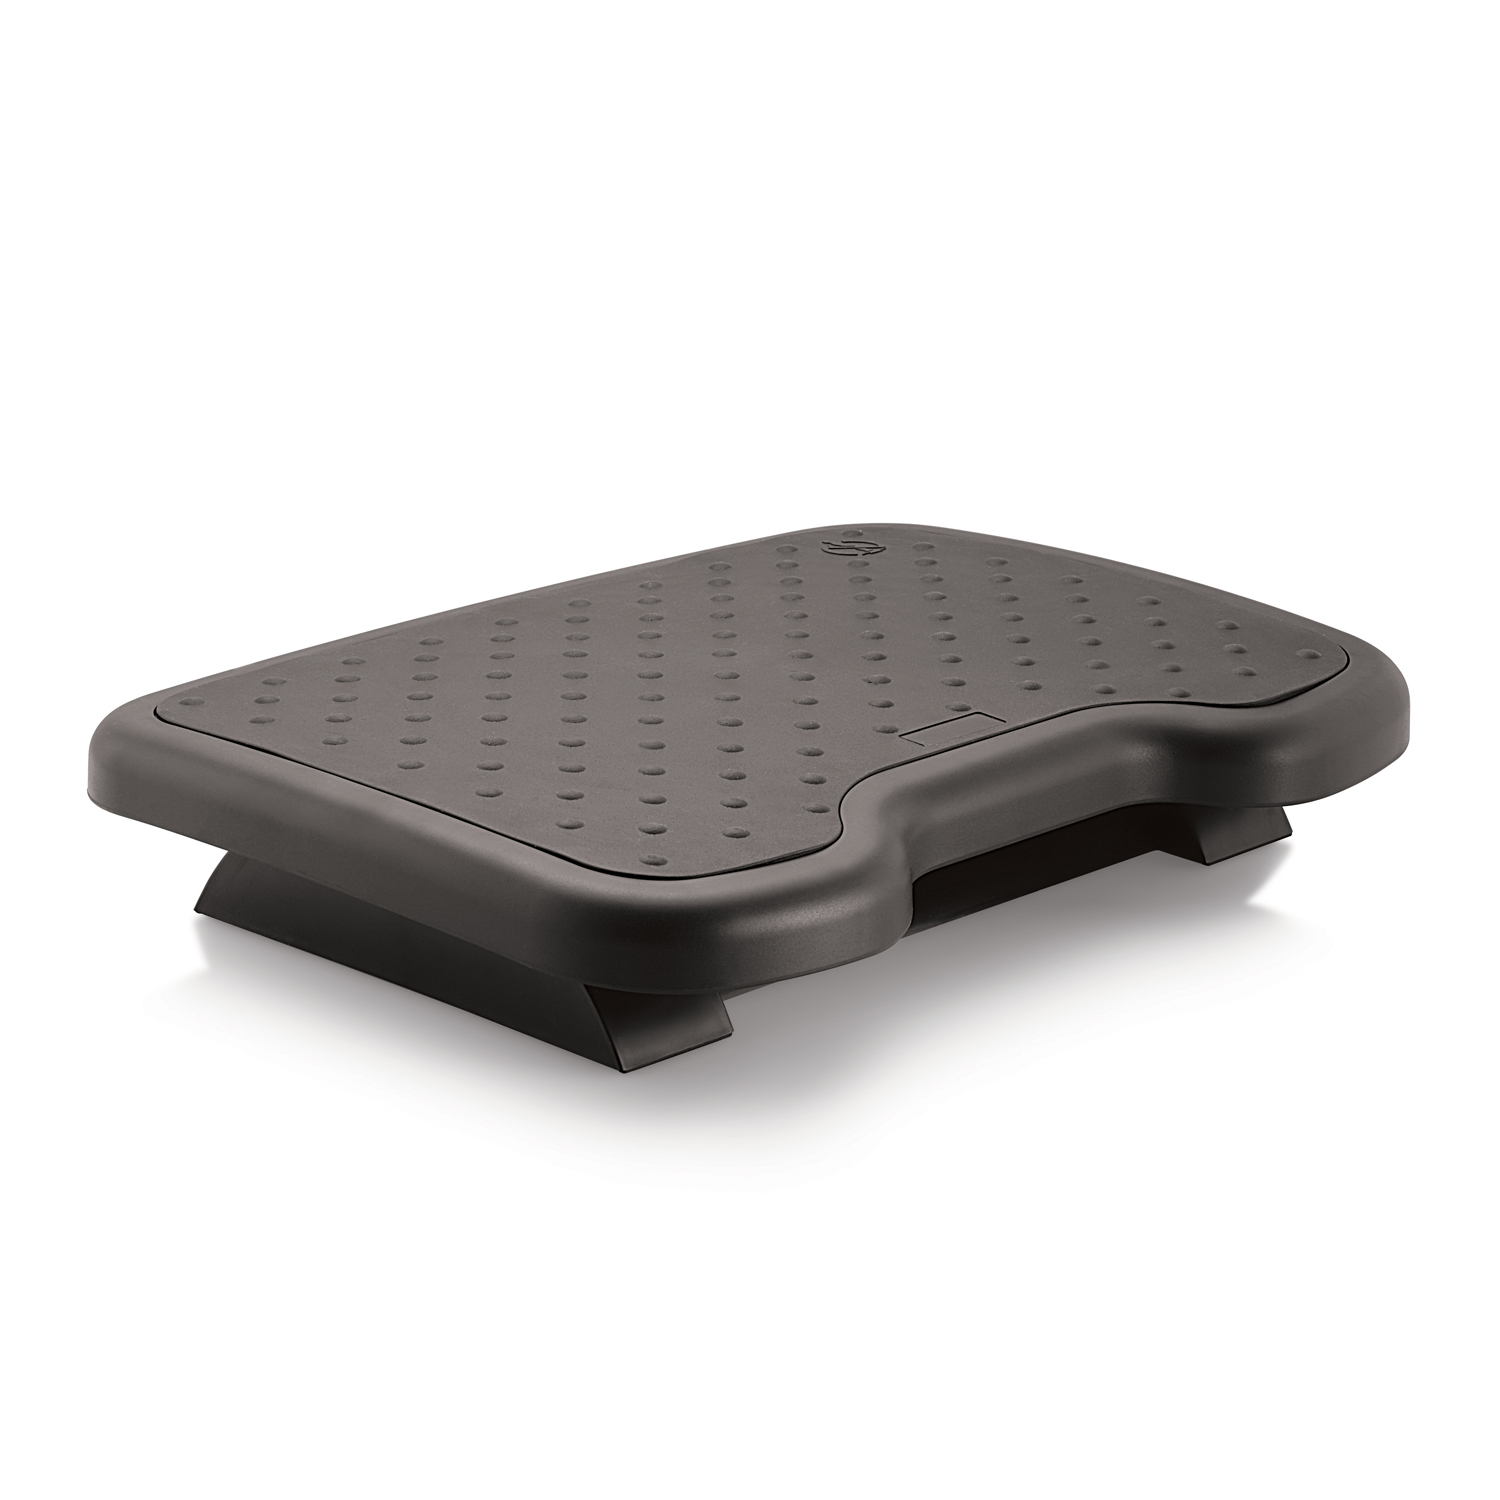 PALO Ergonomic Footrest - With Detachable TPR Surface